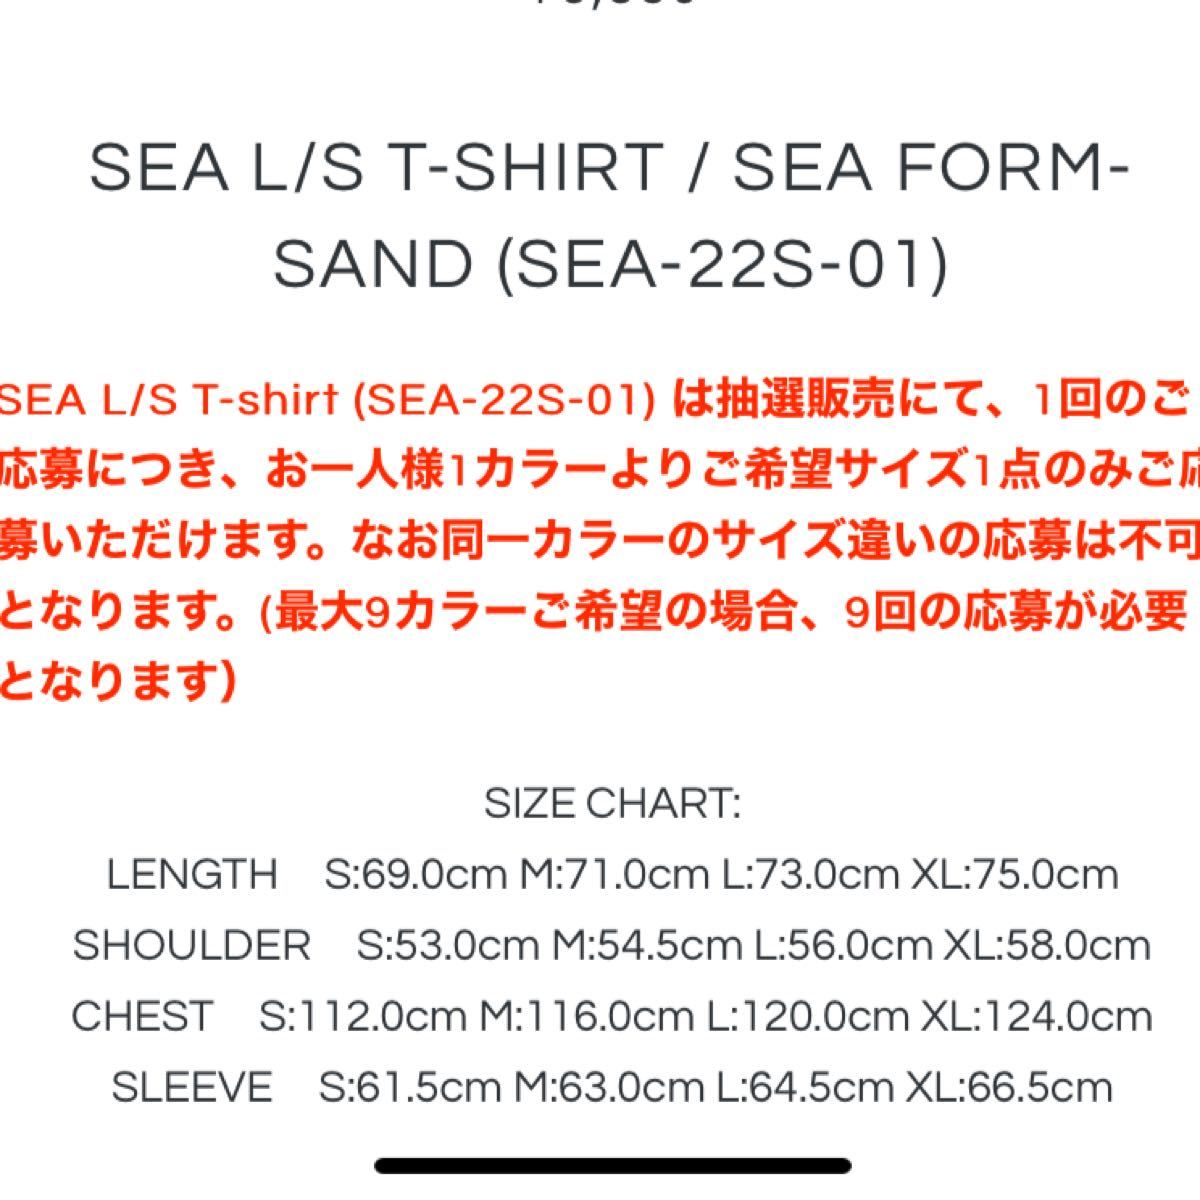 SEA L/S T-shirt / SEA Form-Sand (SEA-22S-01) - L